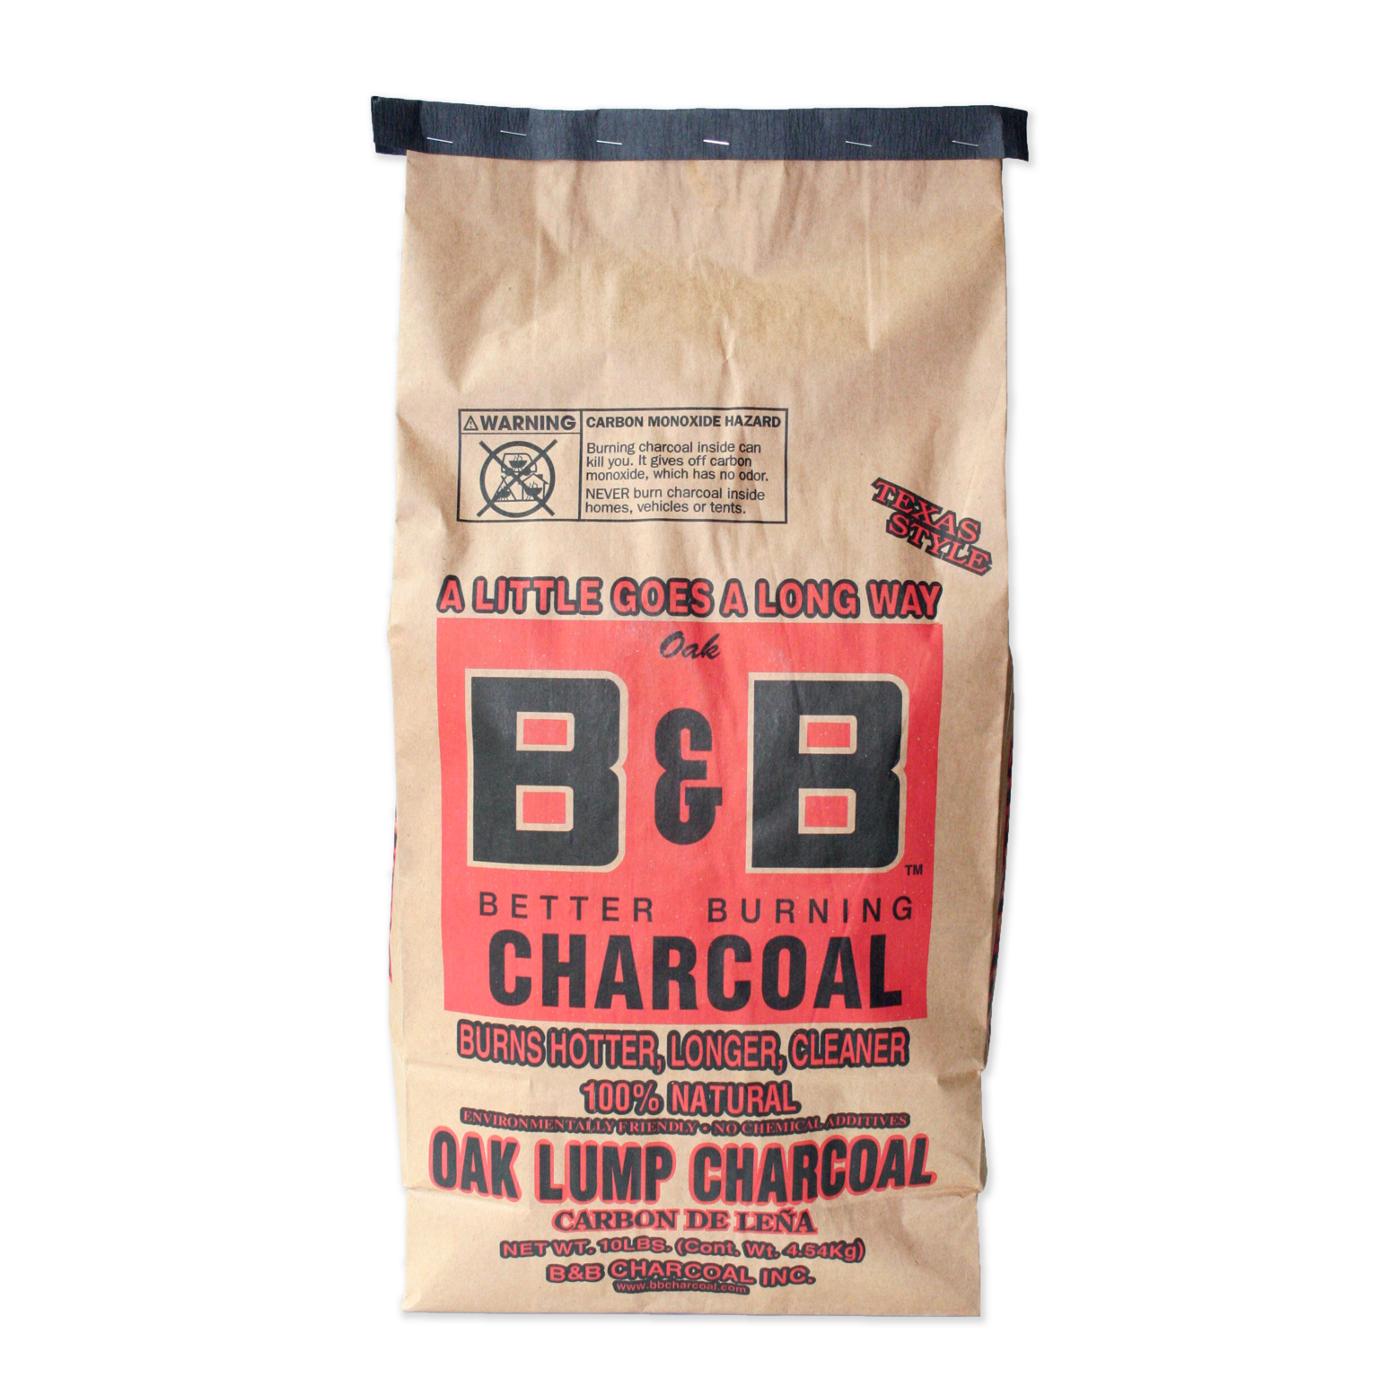 B&B Charcoal Oak Lump Charcoal; image 1 of 5